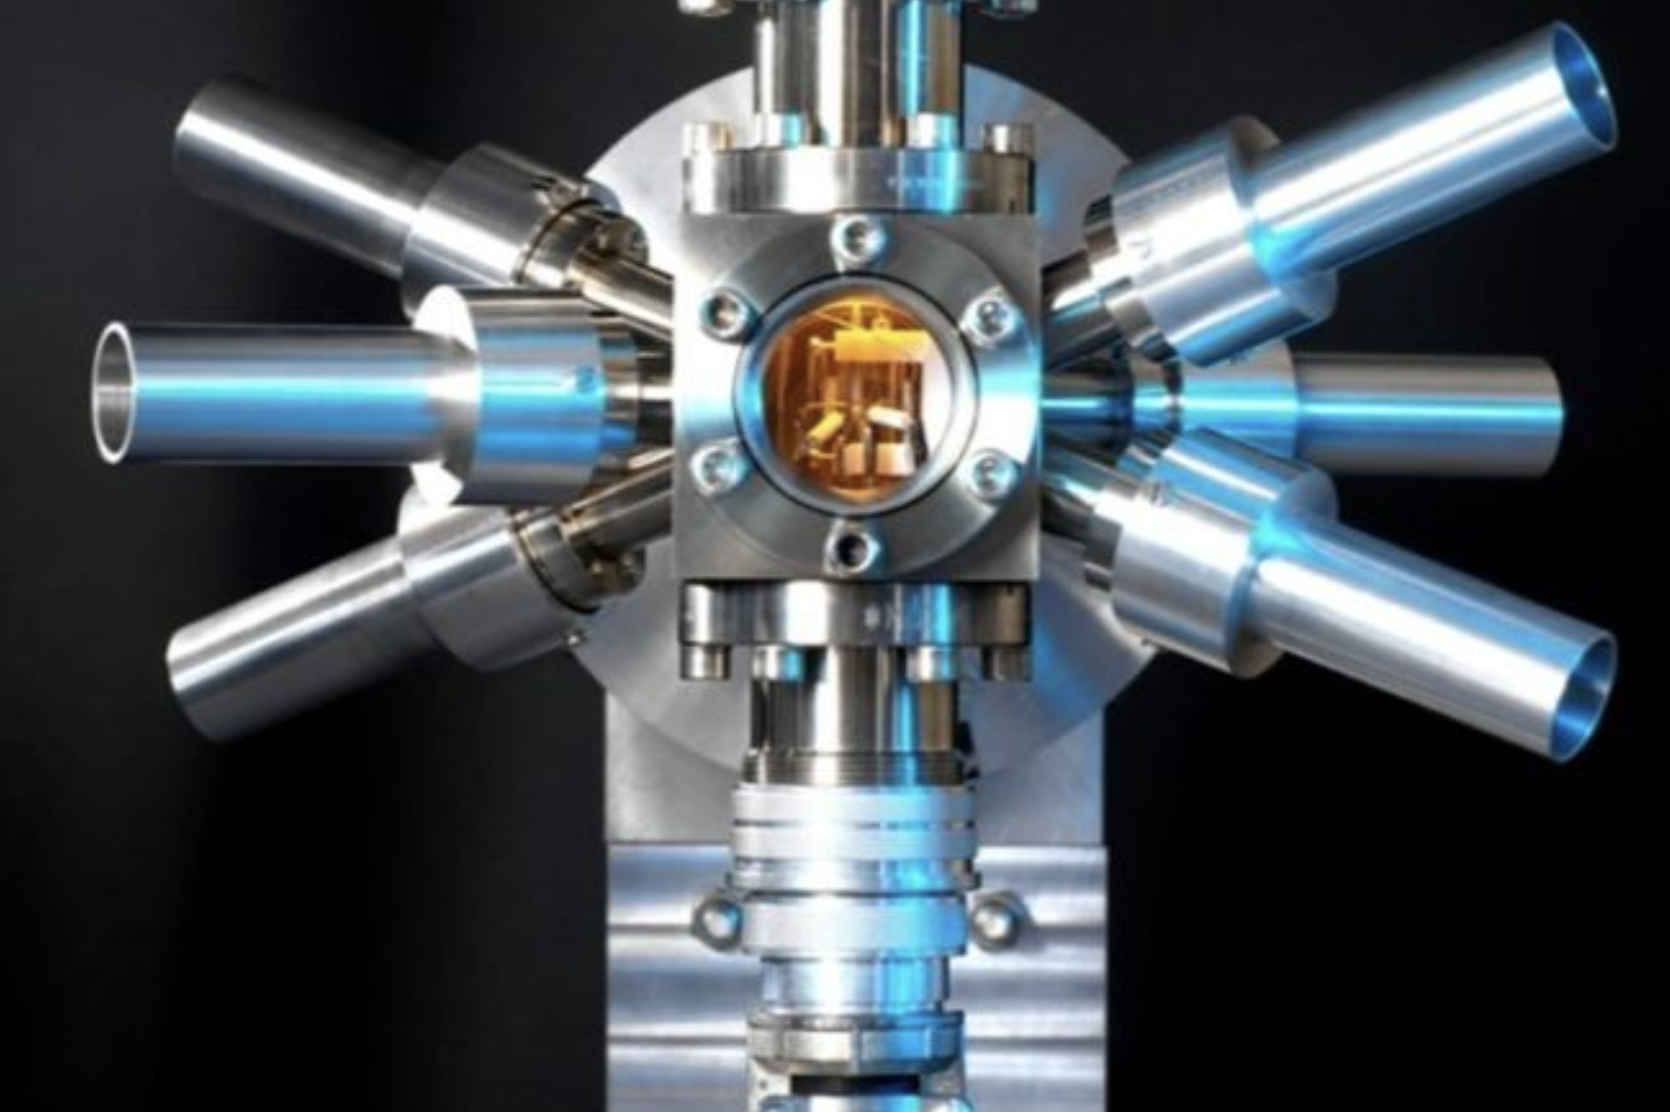 rung Quốc chế tạo thành công đồng hồ quang học có độ chính xác rất cao.